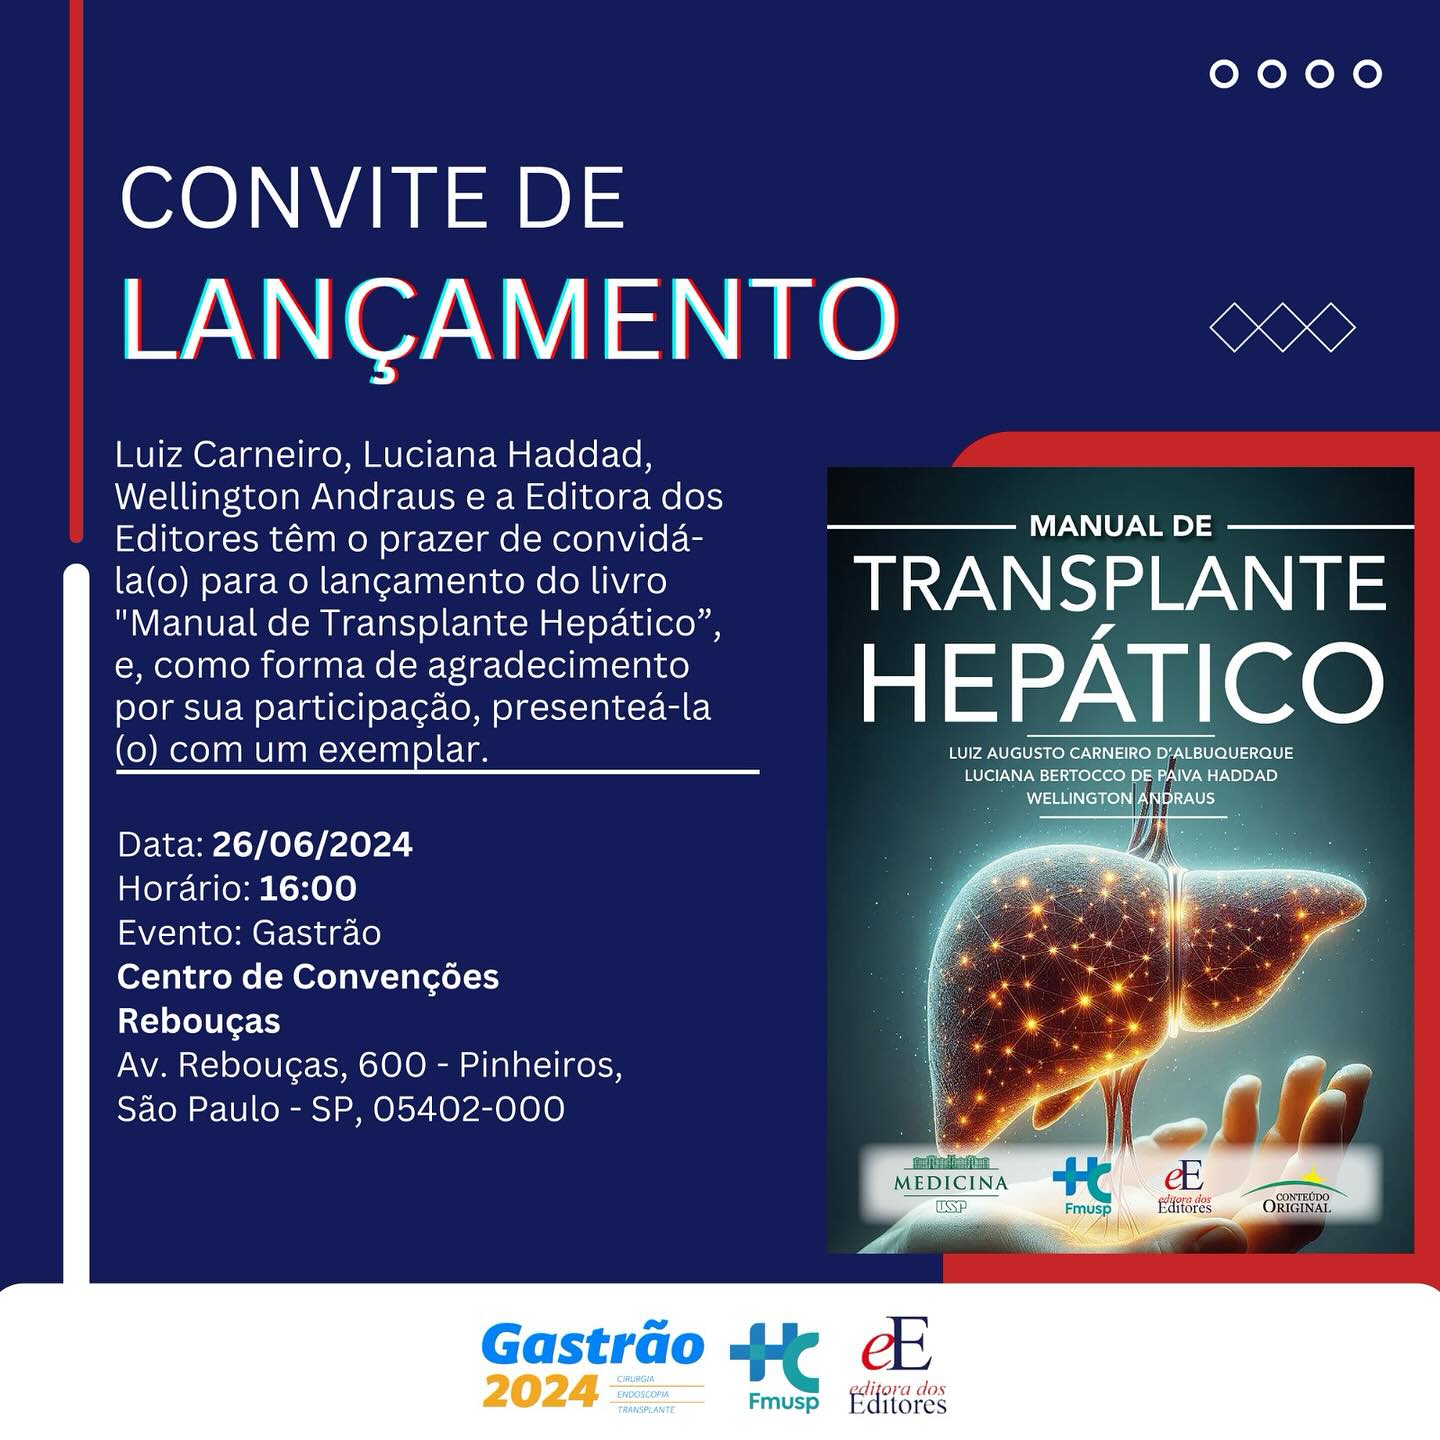 É com grande felicidade que convidamos a todos para o lançamento do nosso Manual de Transplante Hepático hoje no Gastrão 2024!